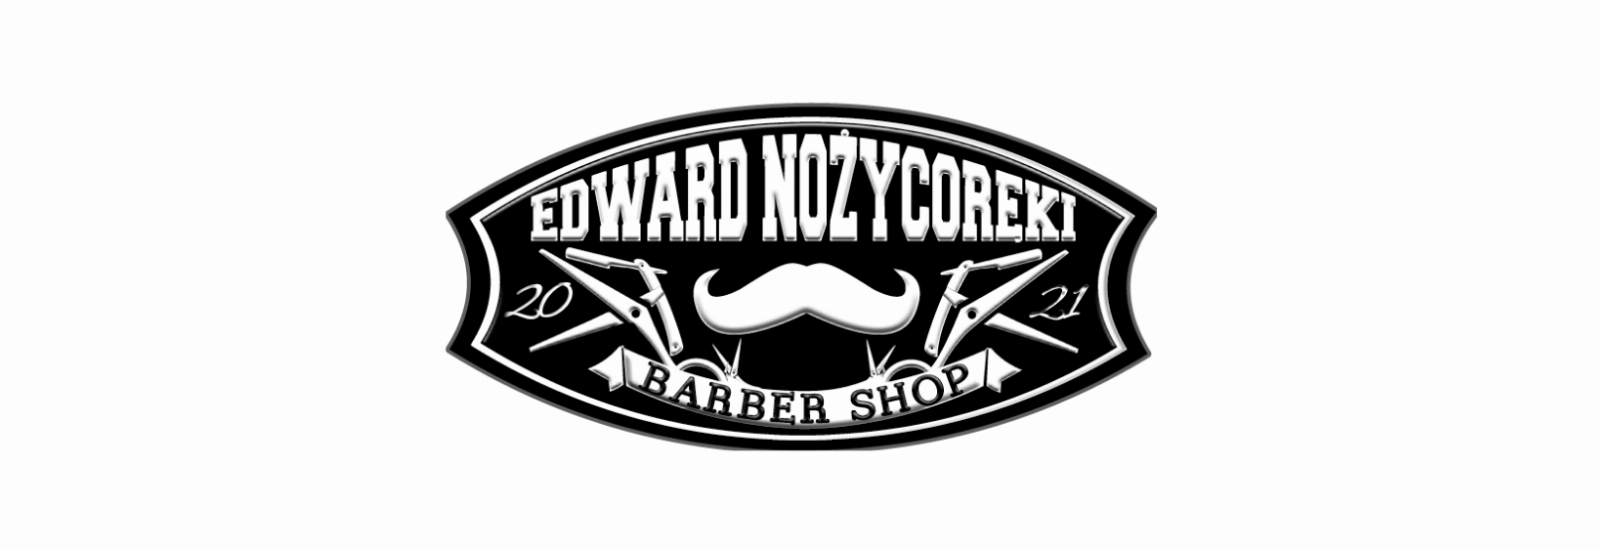 Edward Nożycoręki Barber Shop, Łańcut, projekt-bez-tytulu-7